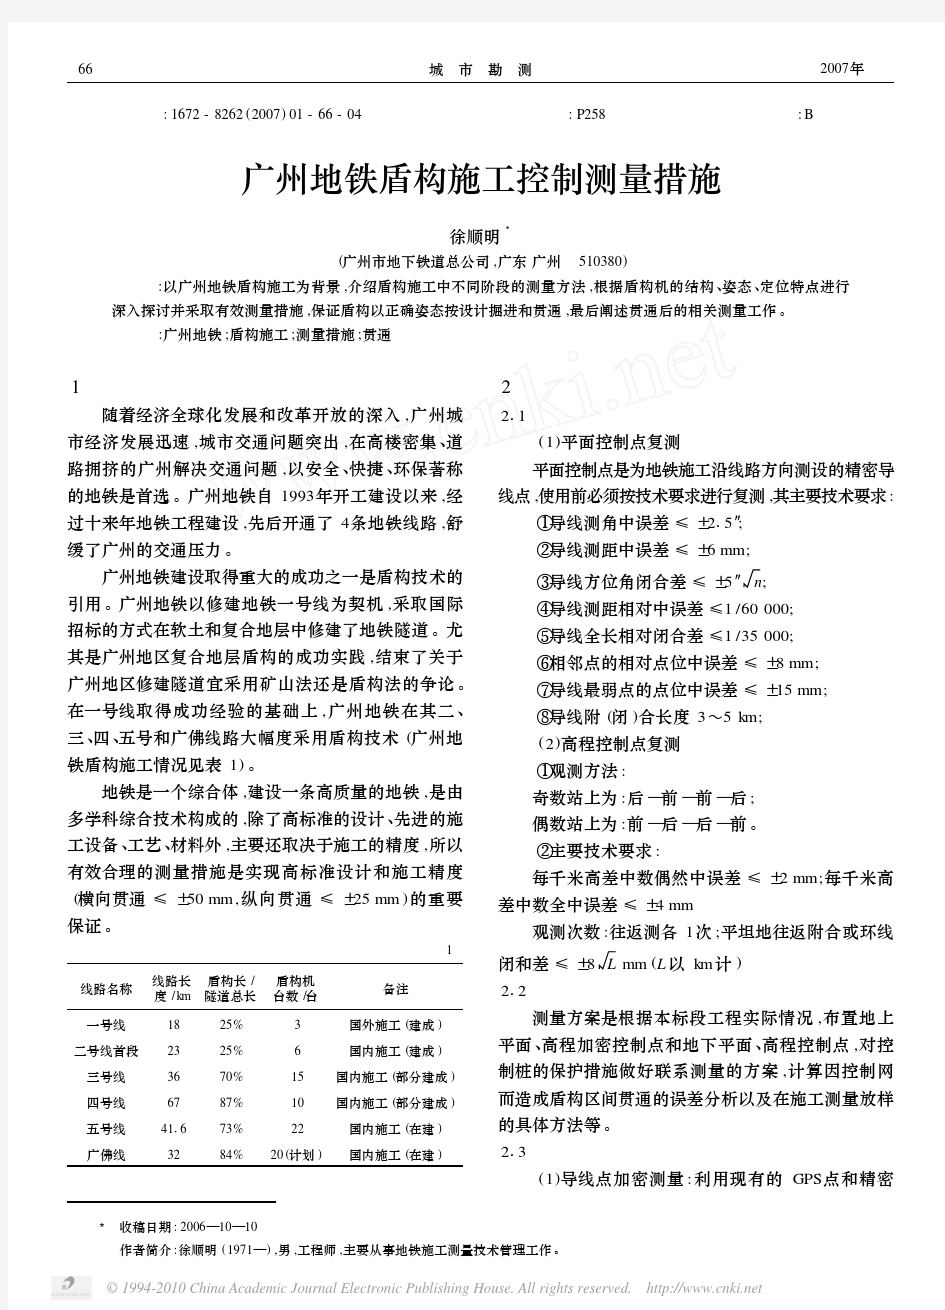 广州地铁盾构施工控制测量措施(很好)